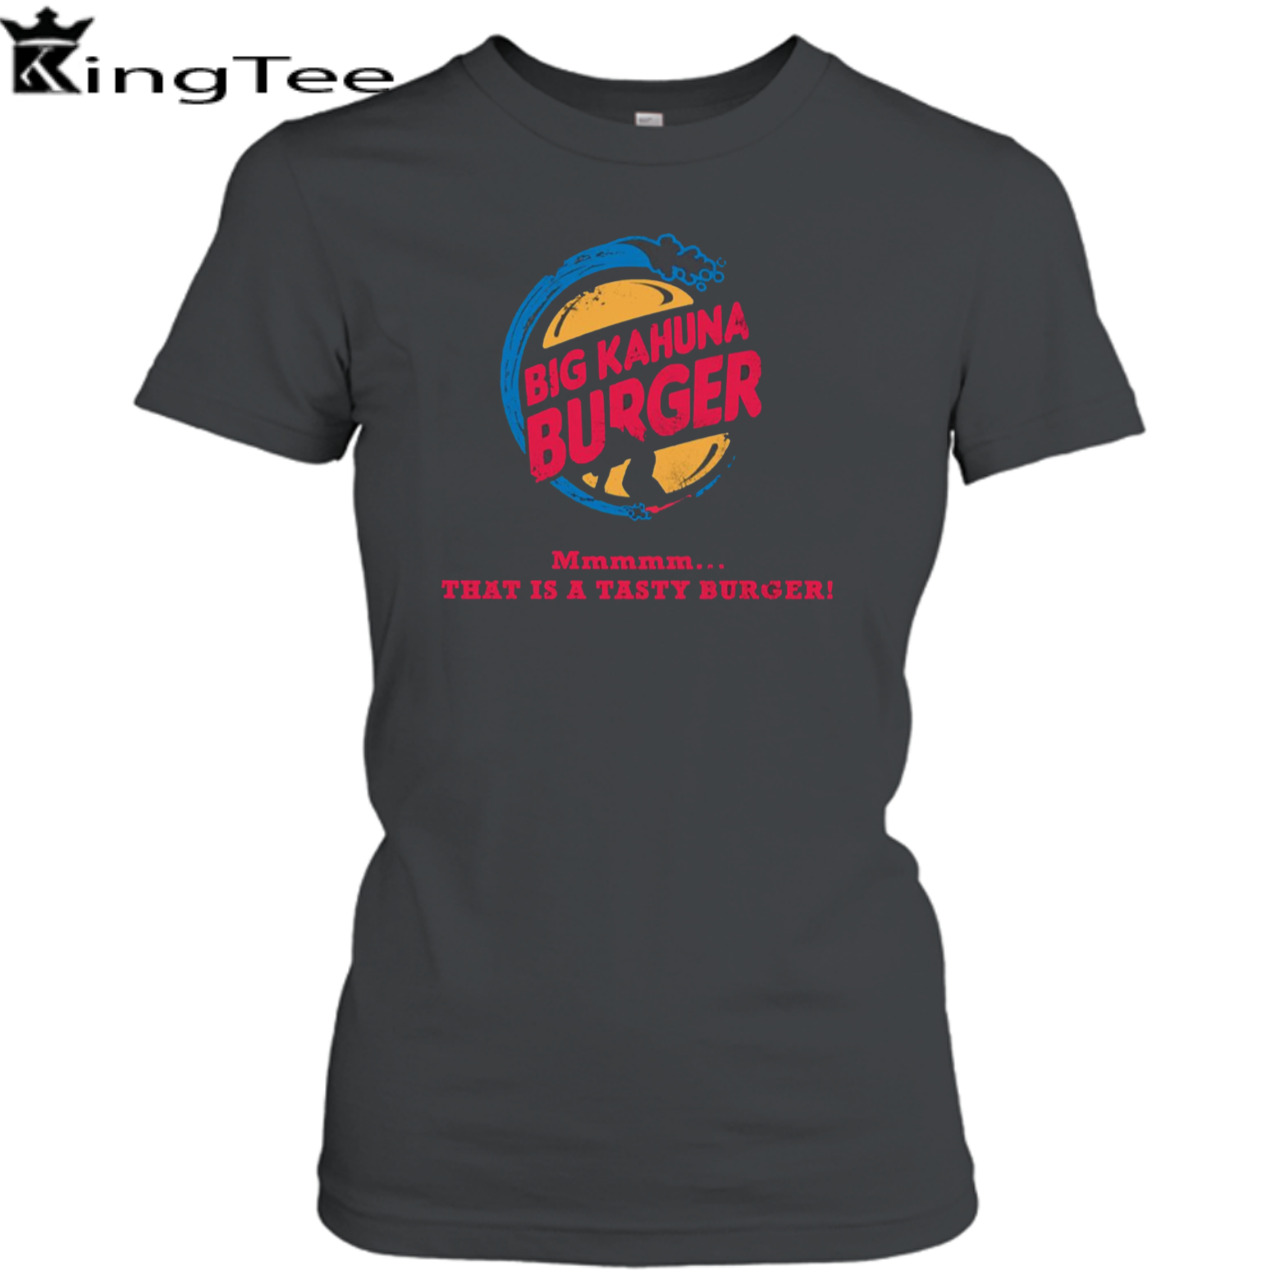 Big Kahuna Burger King shirt